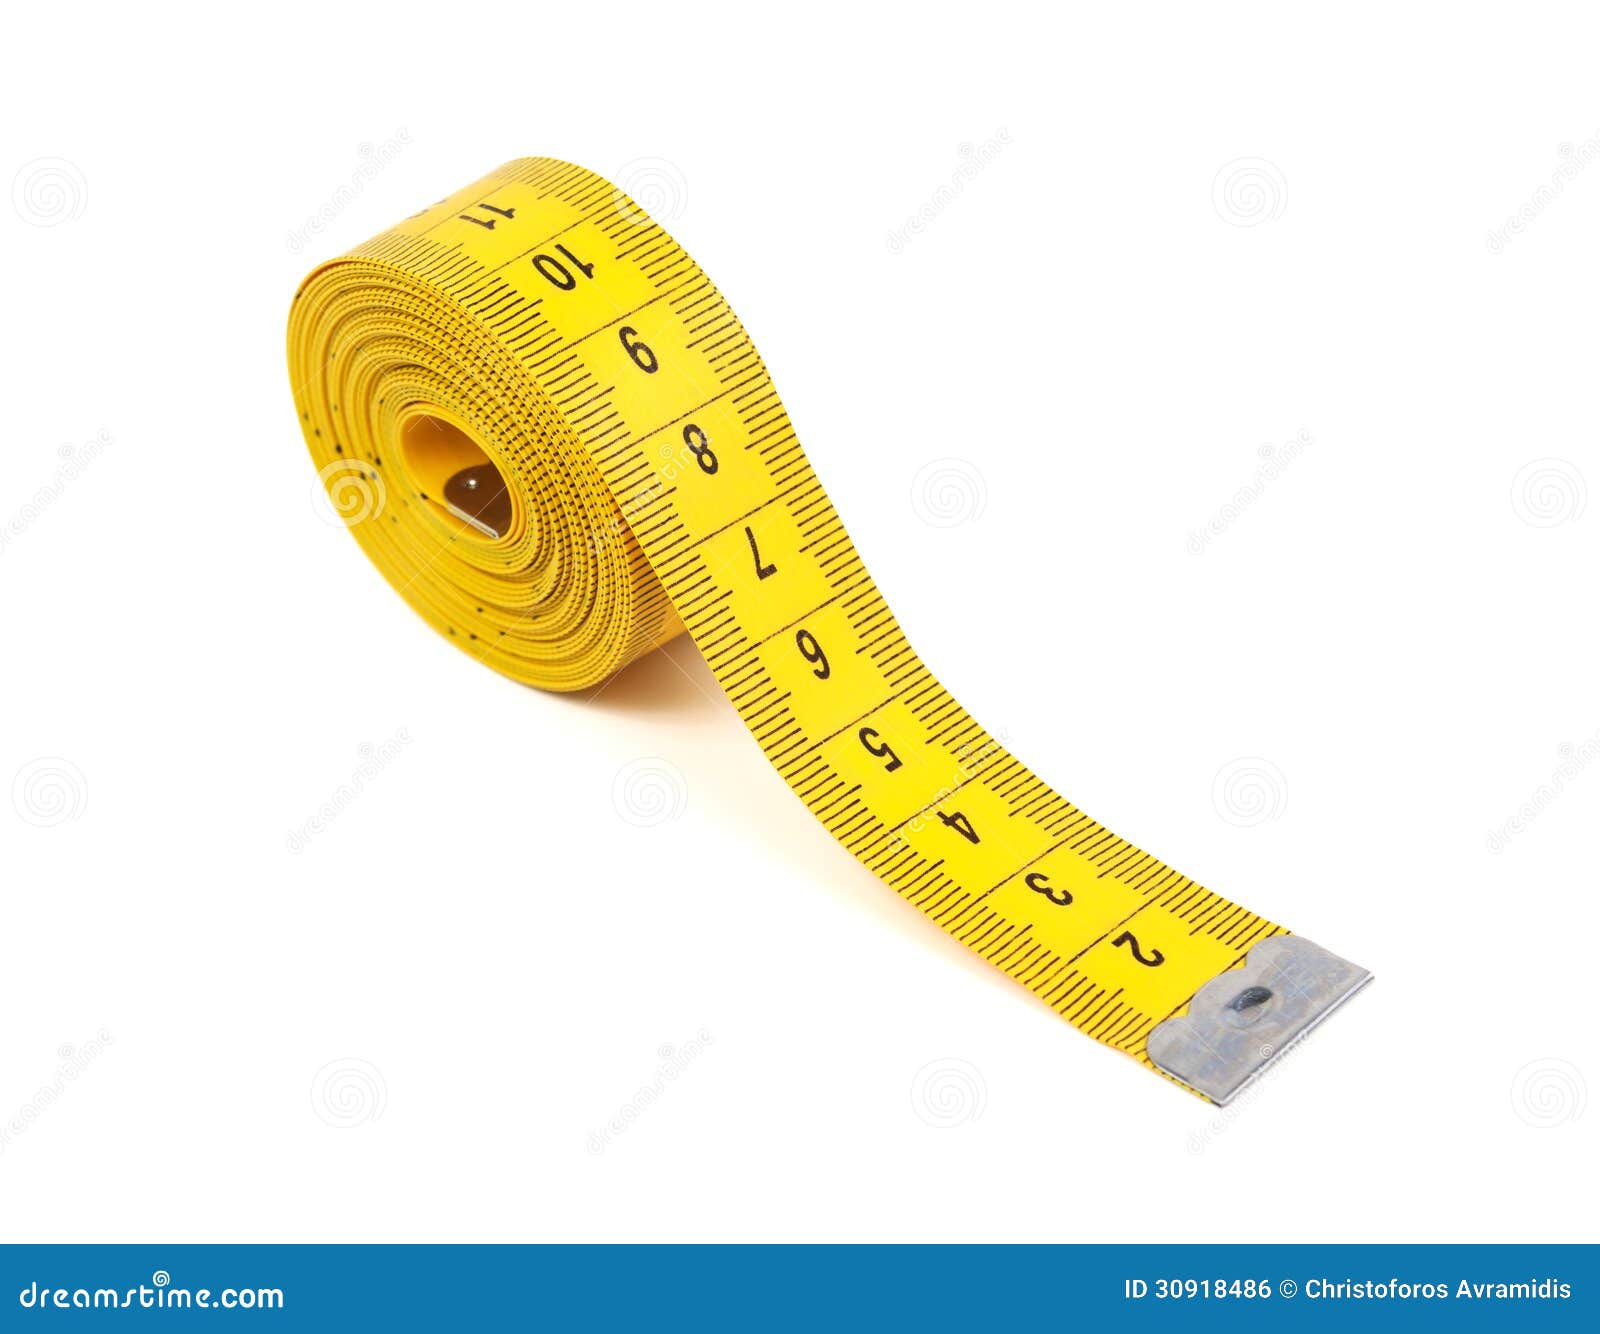 Una cinta métrica amarilla está al lado de una cinta métrica amarilla.